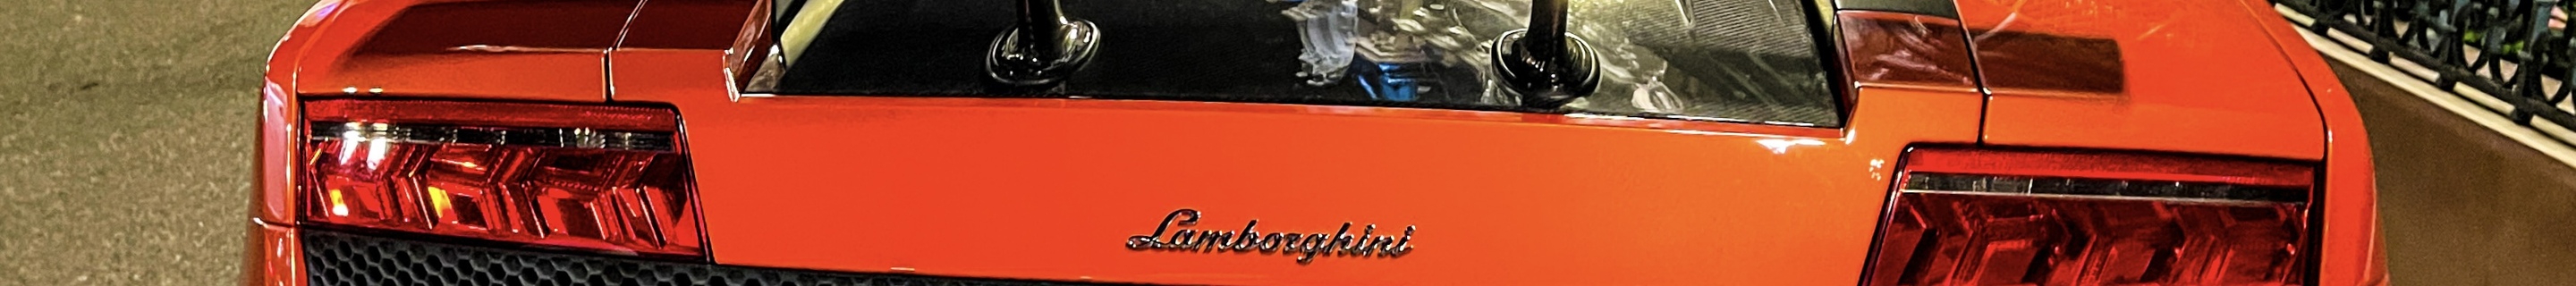 Lamborghini Gallardo LP570-4 Superleggera Edizione Tecnica